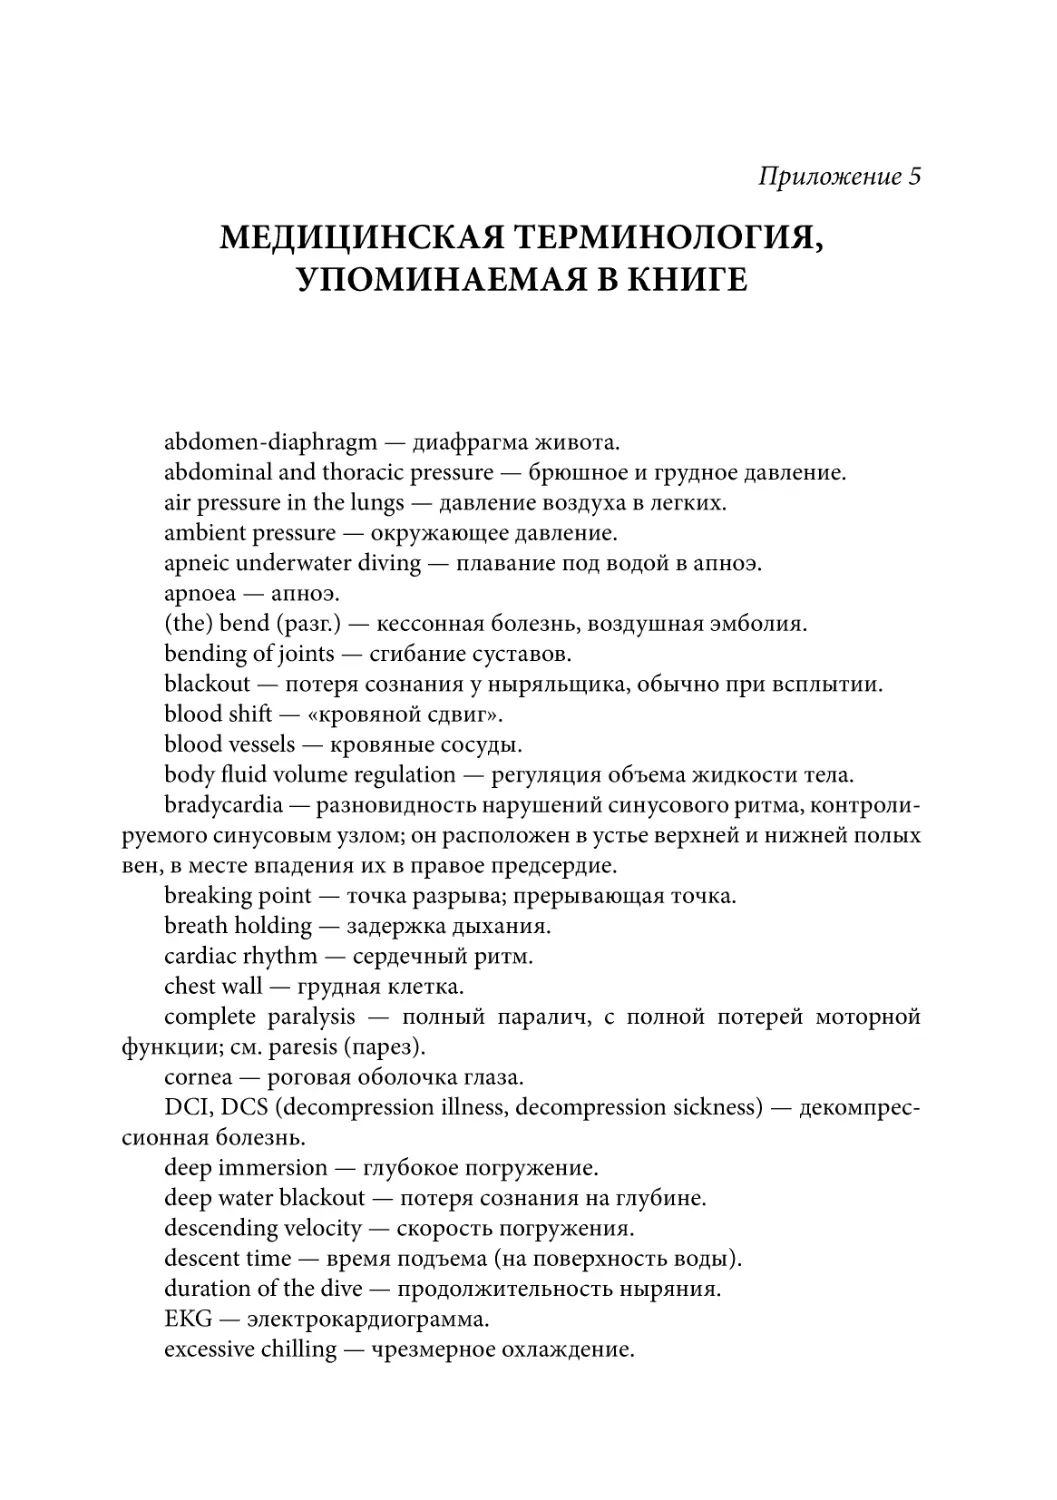 Приложение 5. Медицинская терминология, упоминаемая в книге